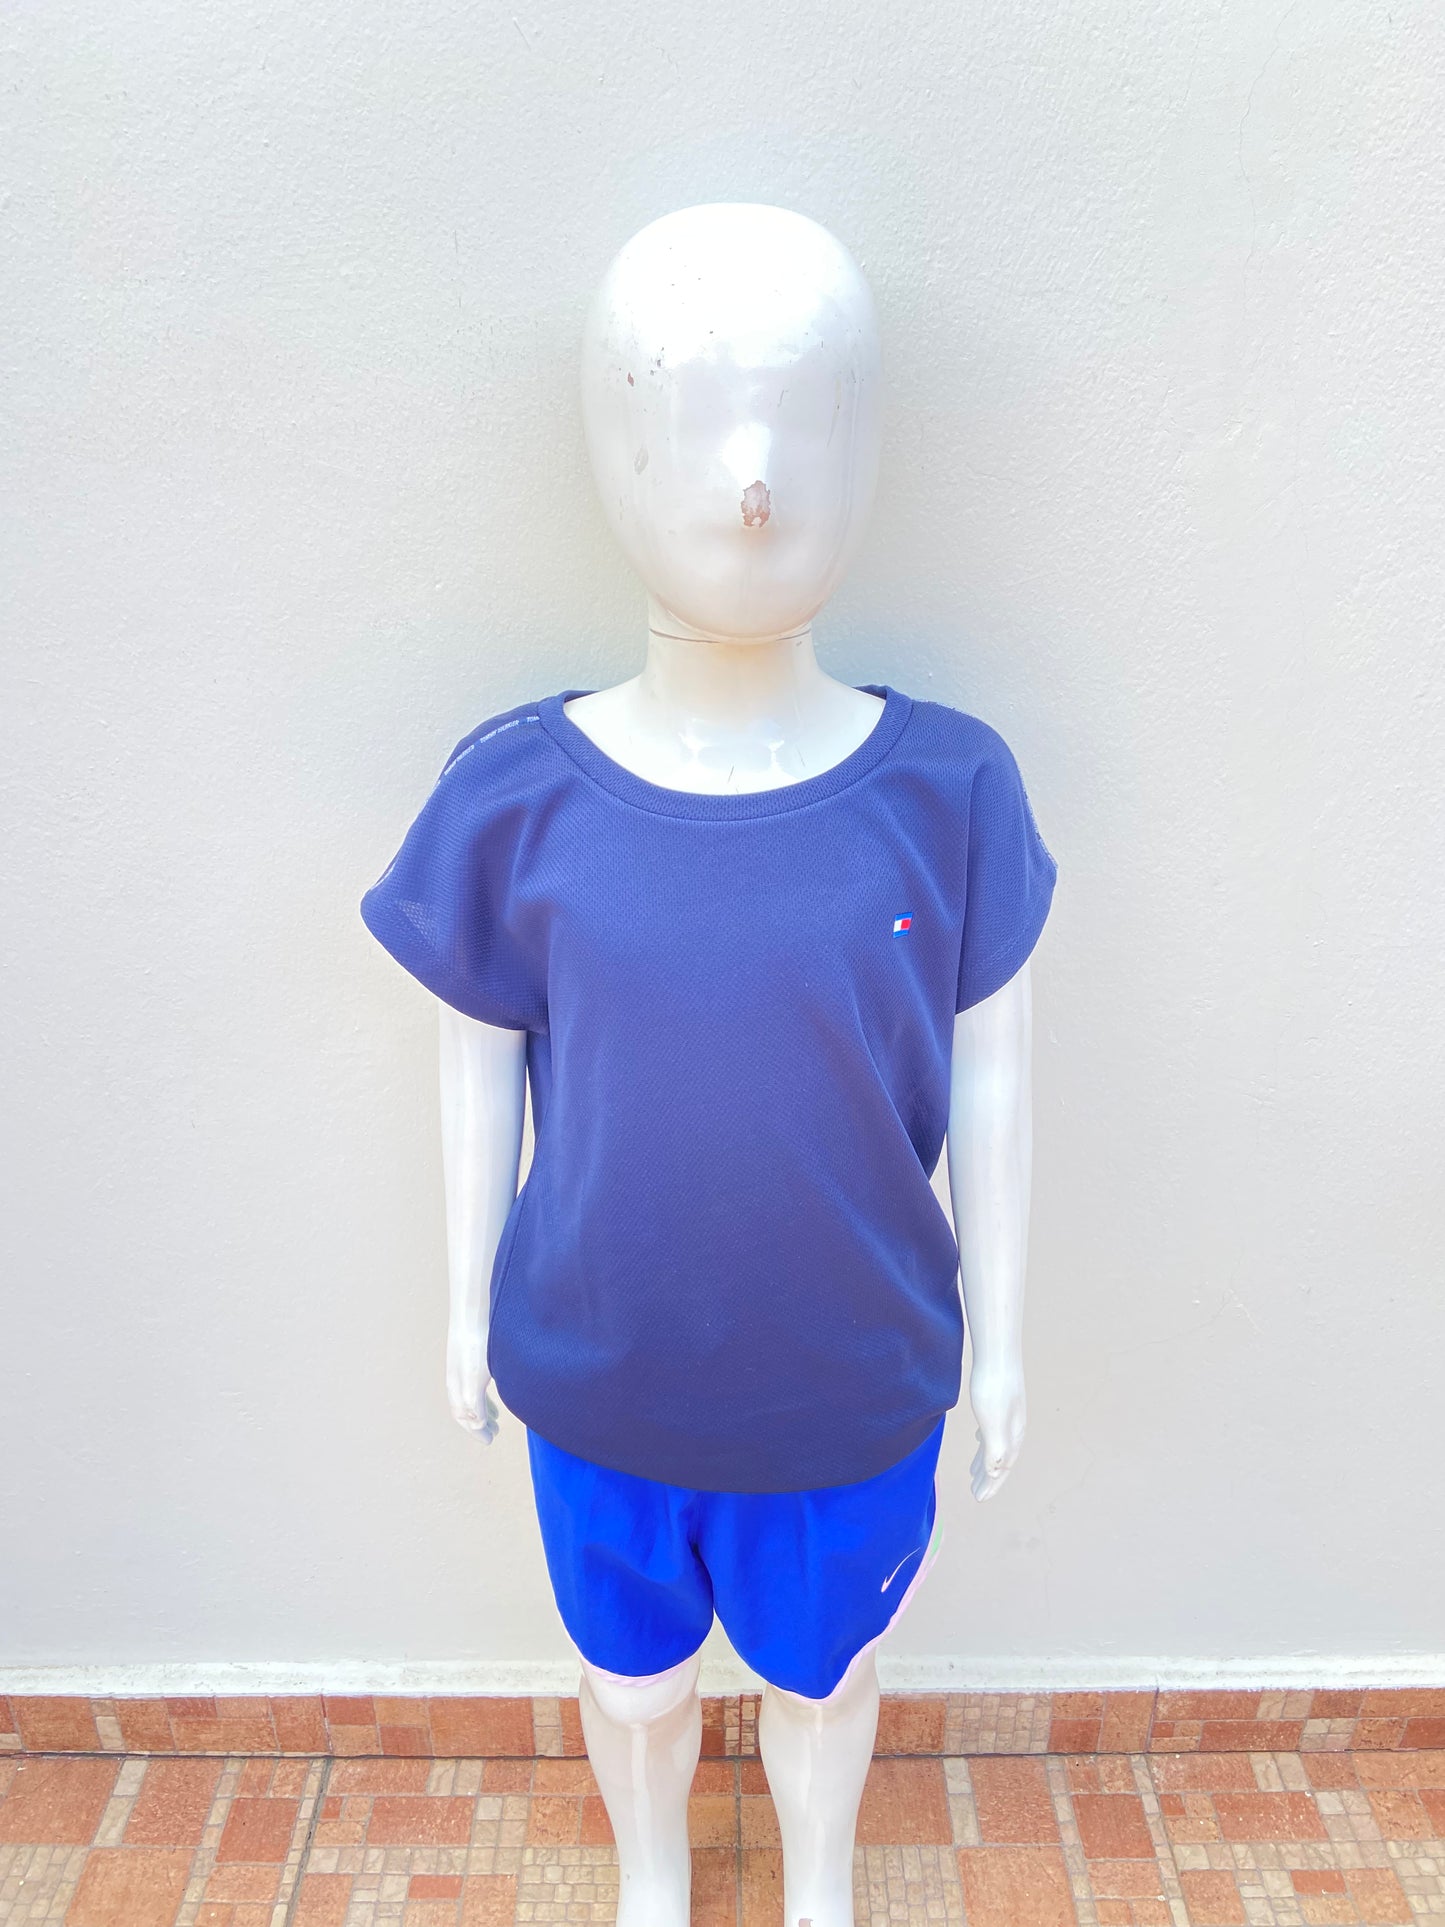 T-shirt Sueter Tommy Hilfiger original, azul marino con logotipo de la marca pequeño.